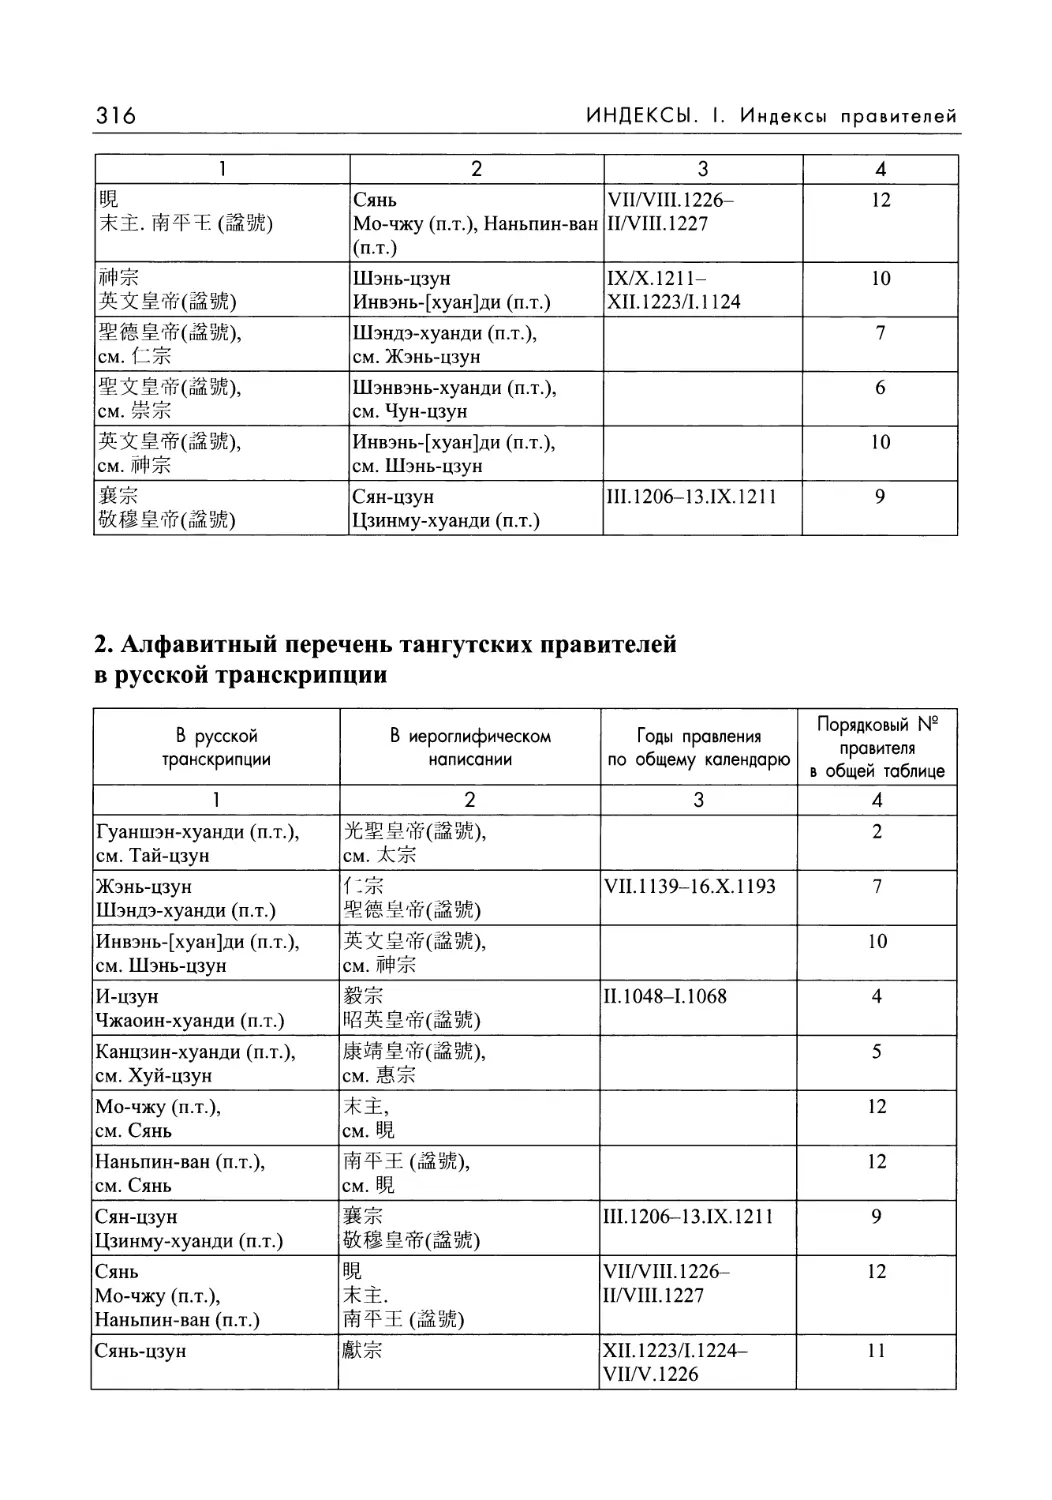 2. Алфавитный перечень тангутских правителей в русской транскрипции